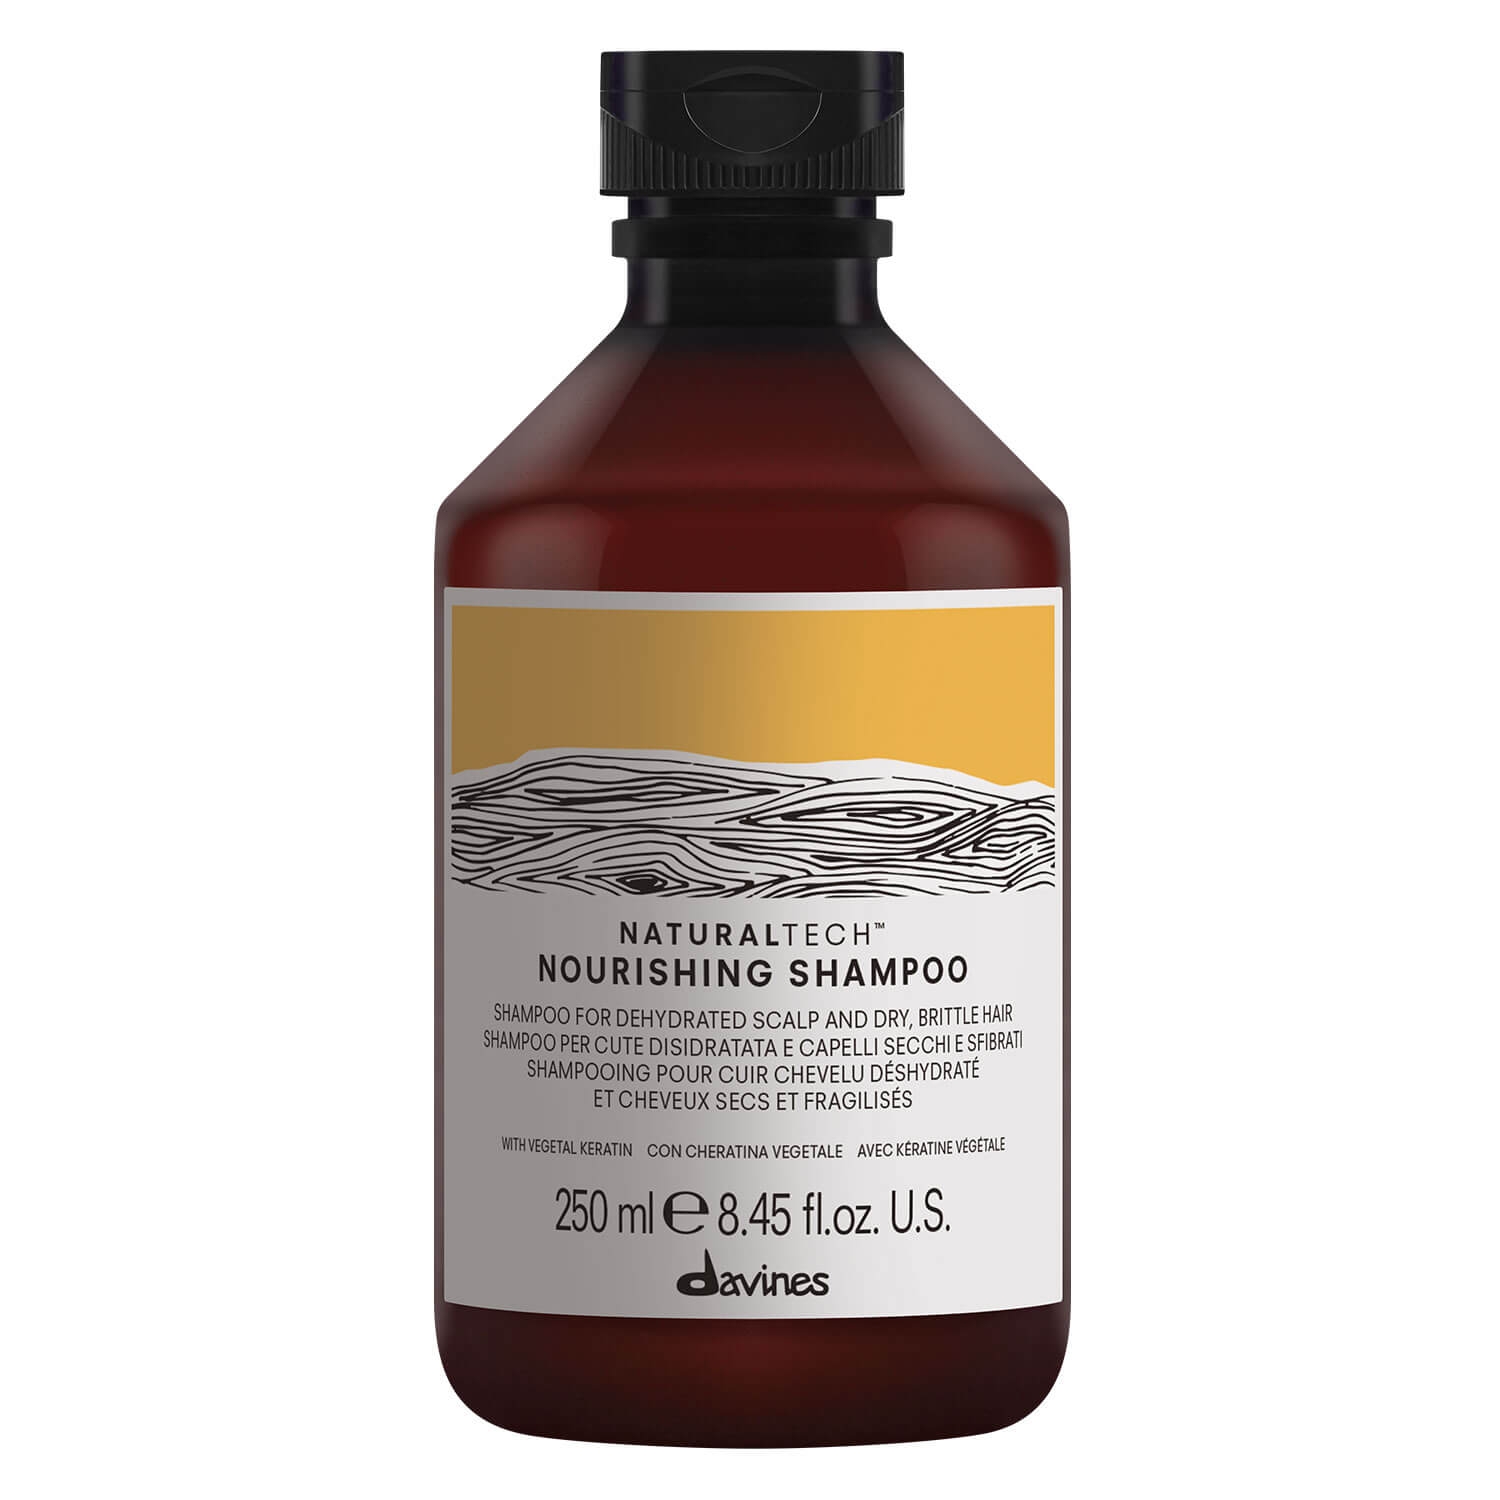 Produktbild von Naturaltech - Nourishing Shampoo